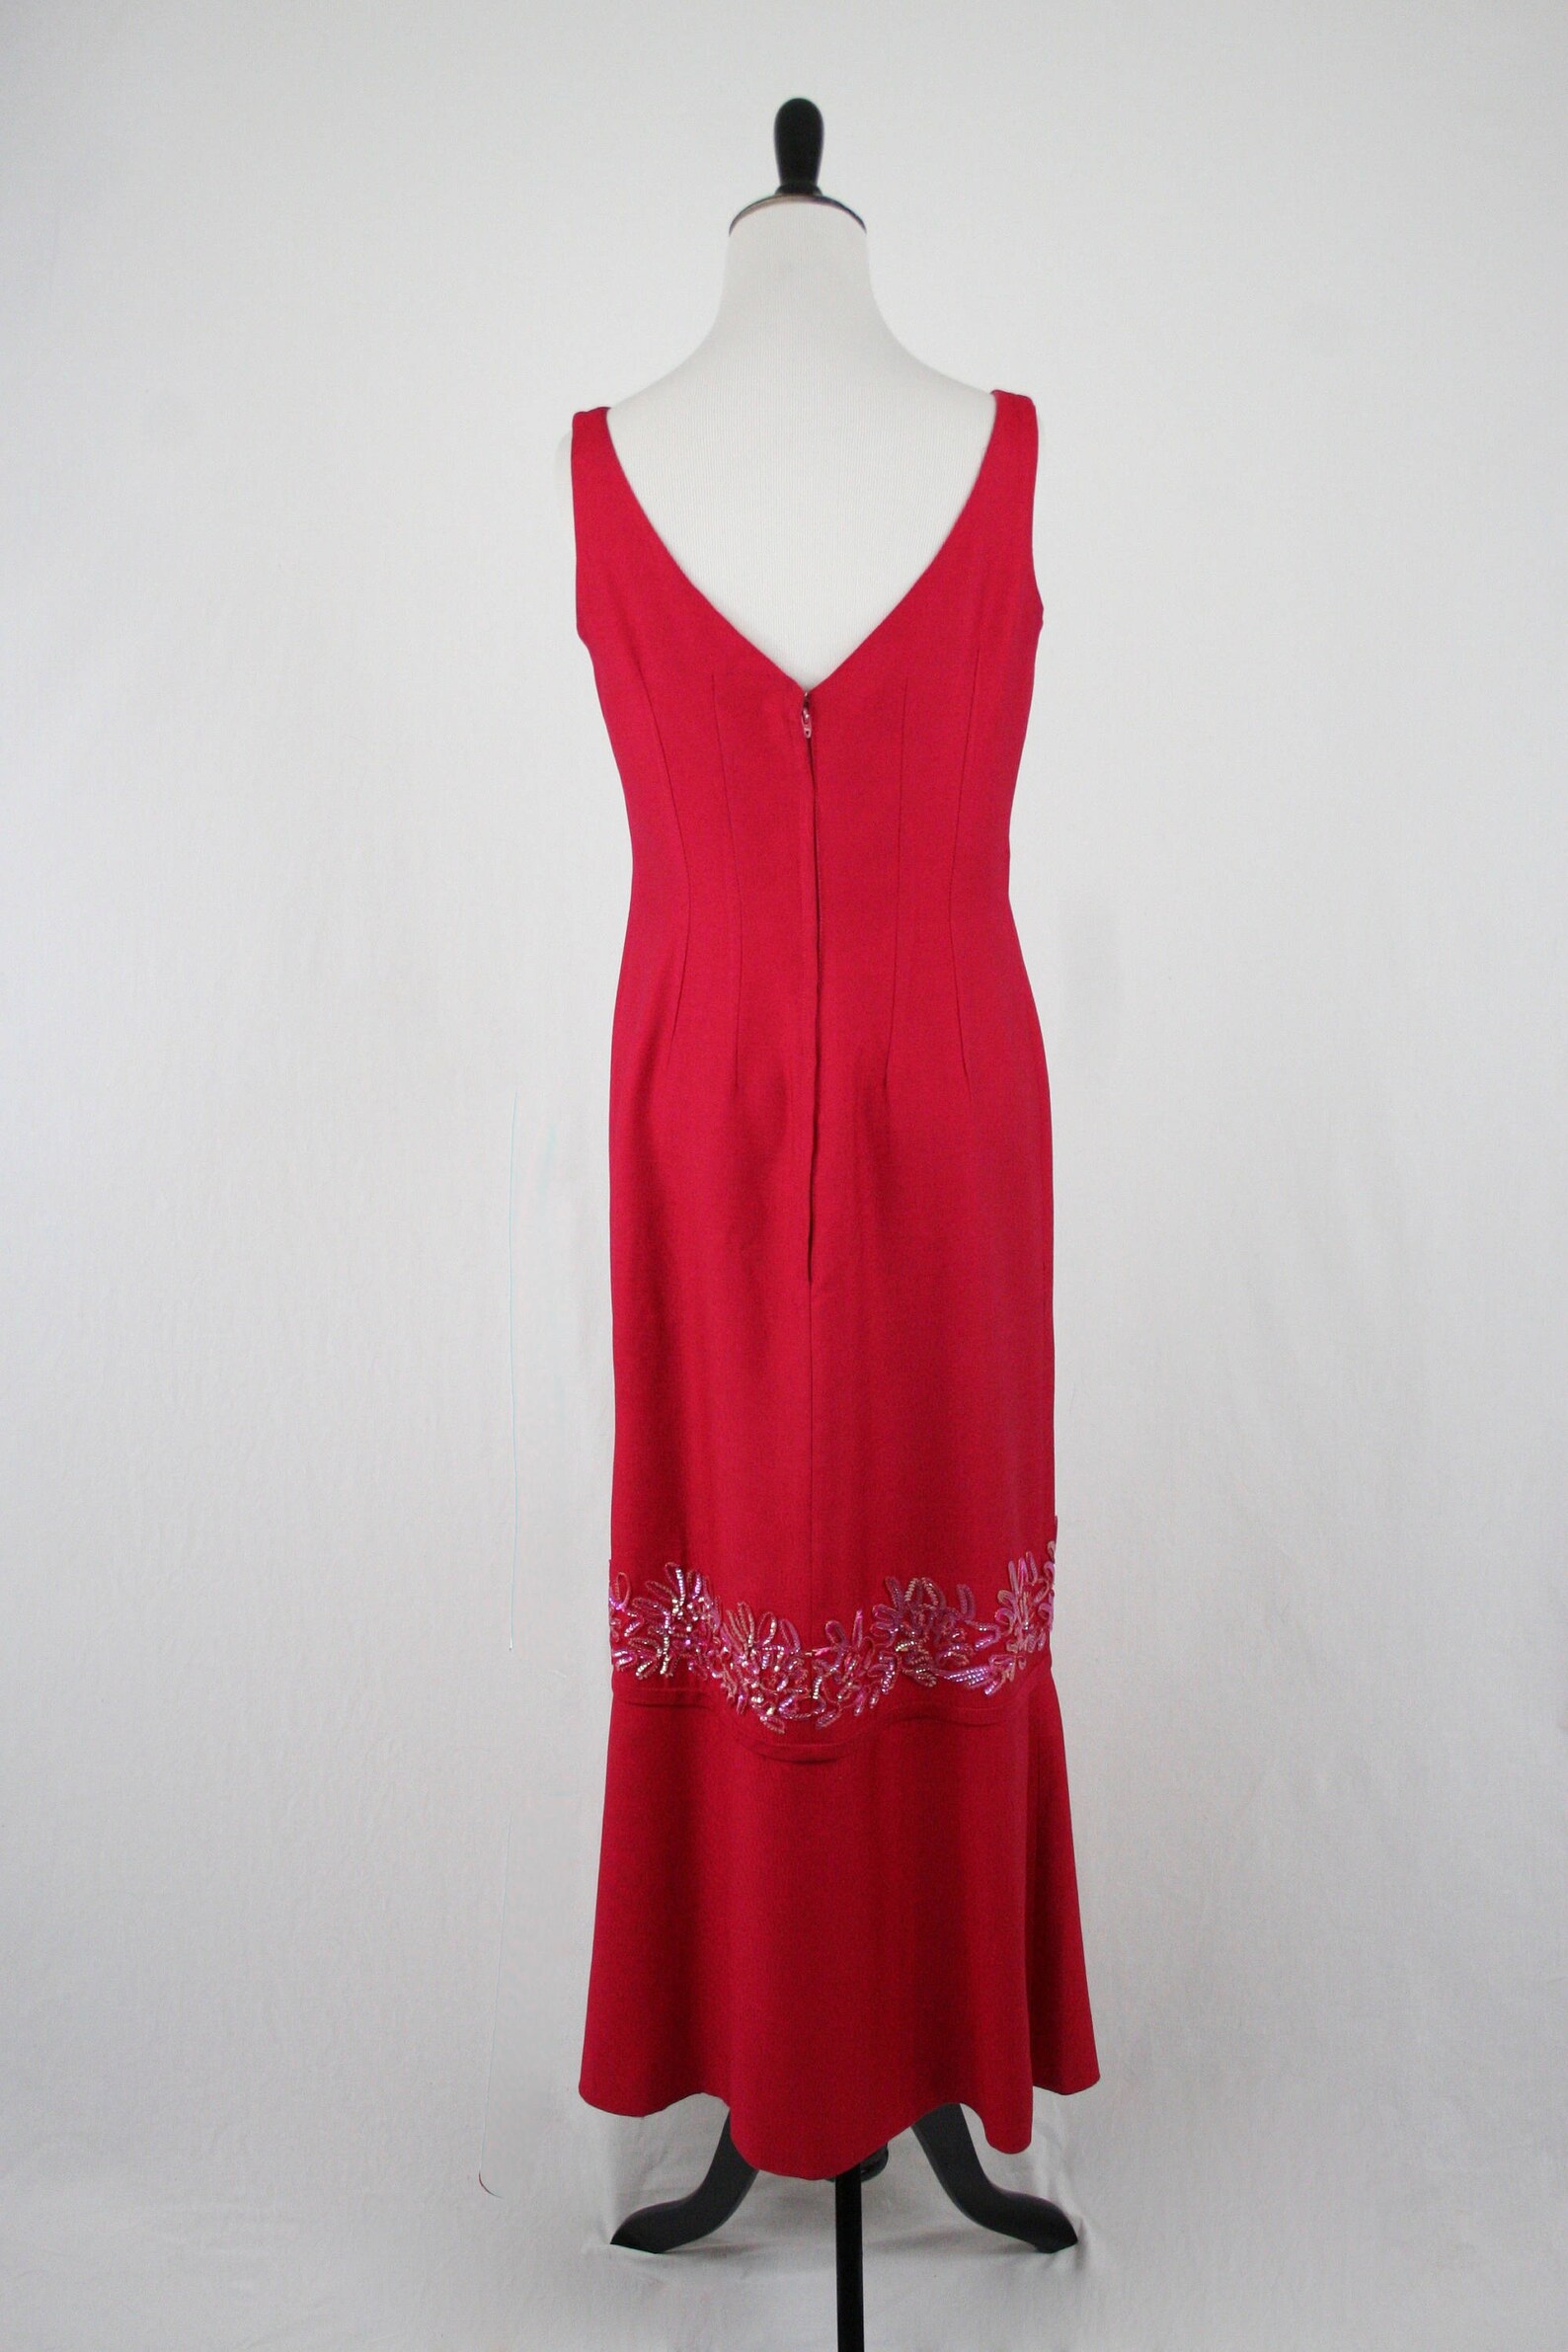 1960s Emma Domb Dress Pink Party Dress Long Maxi Beaded | Etsy